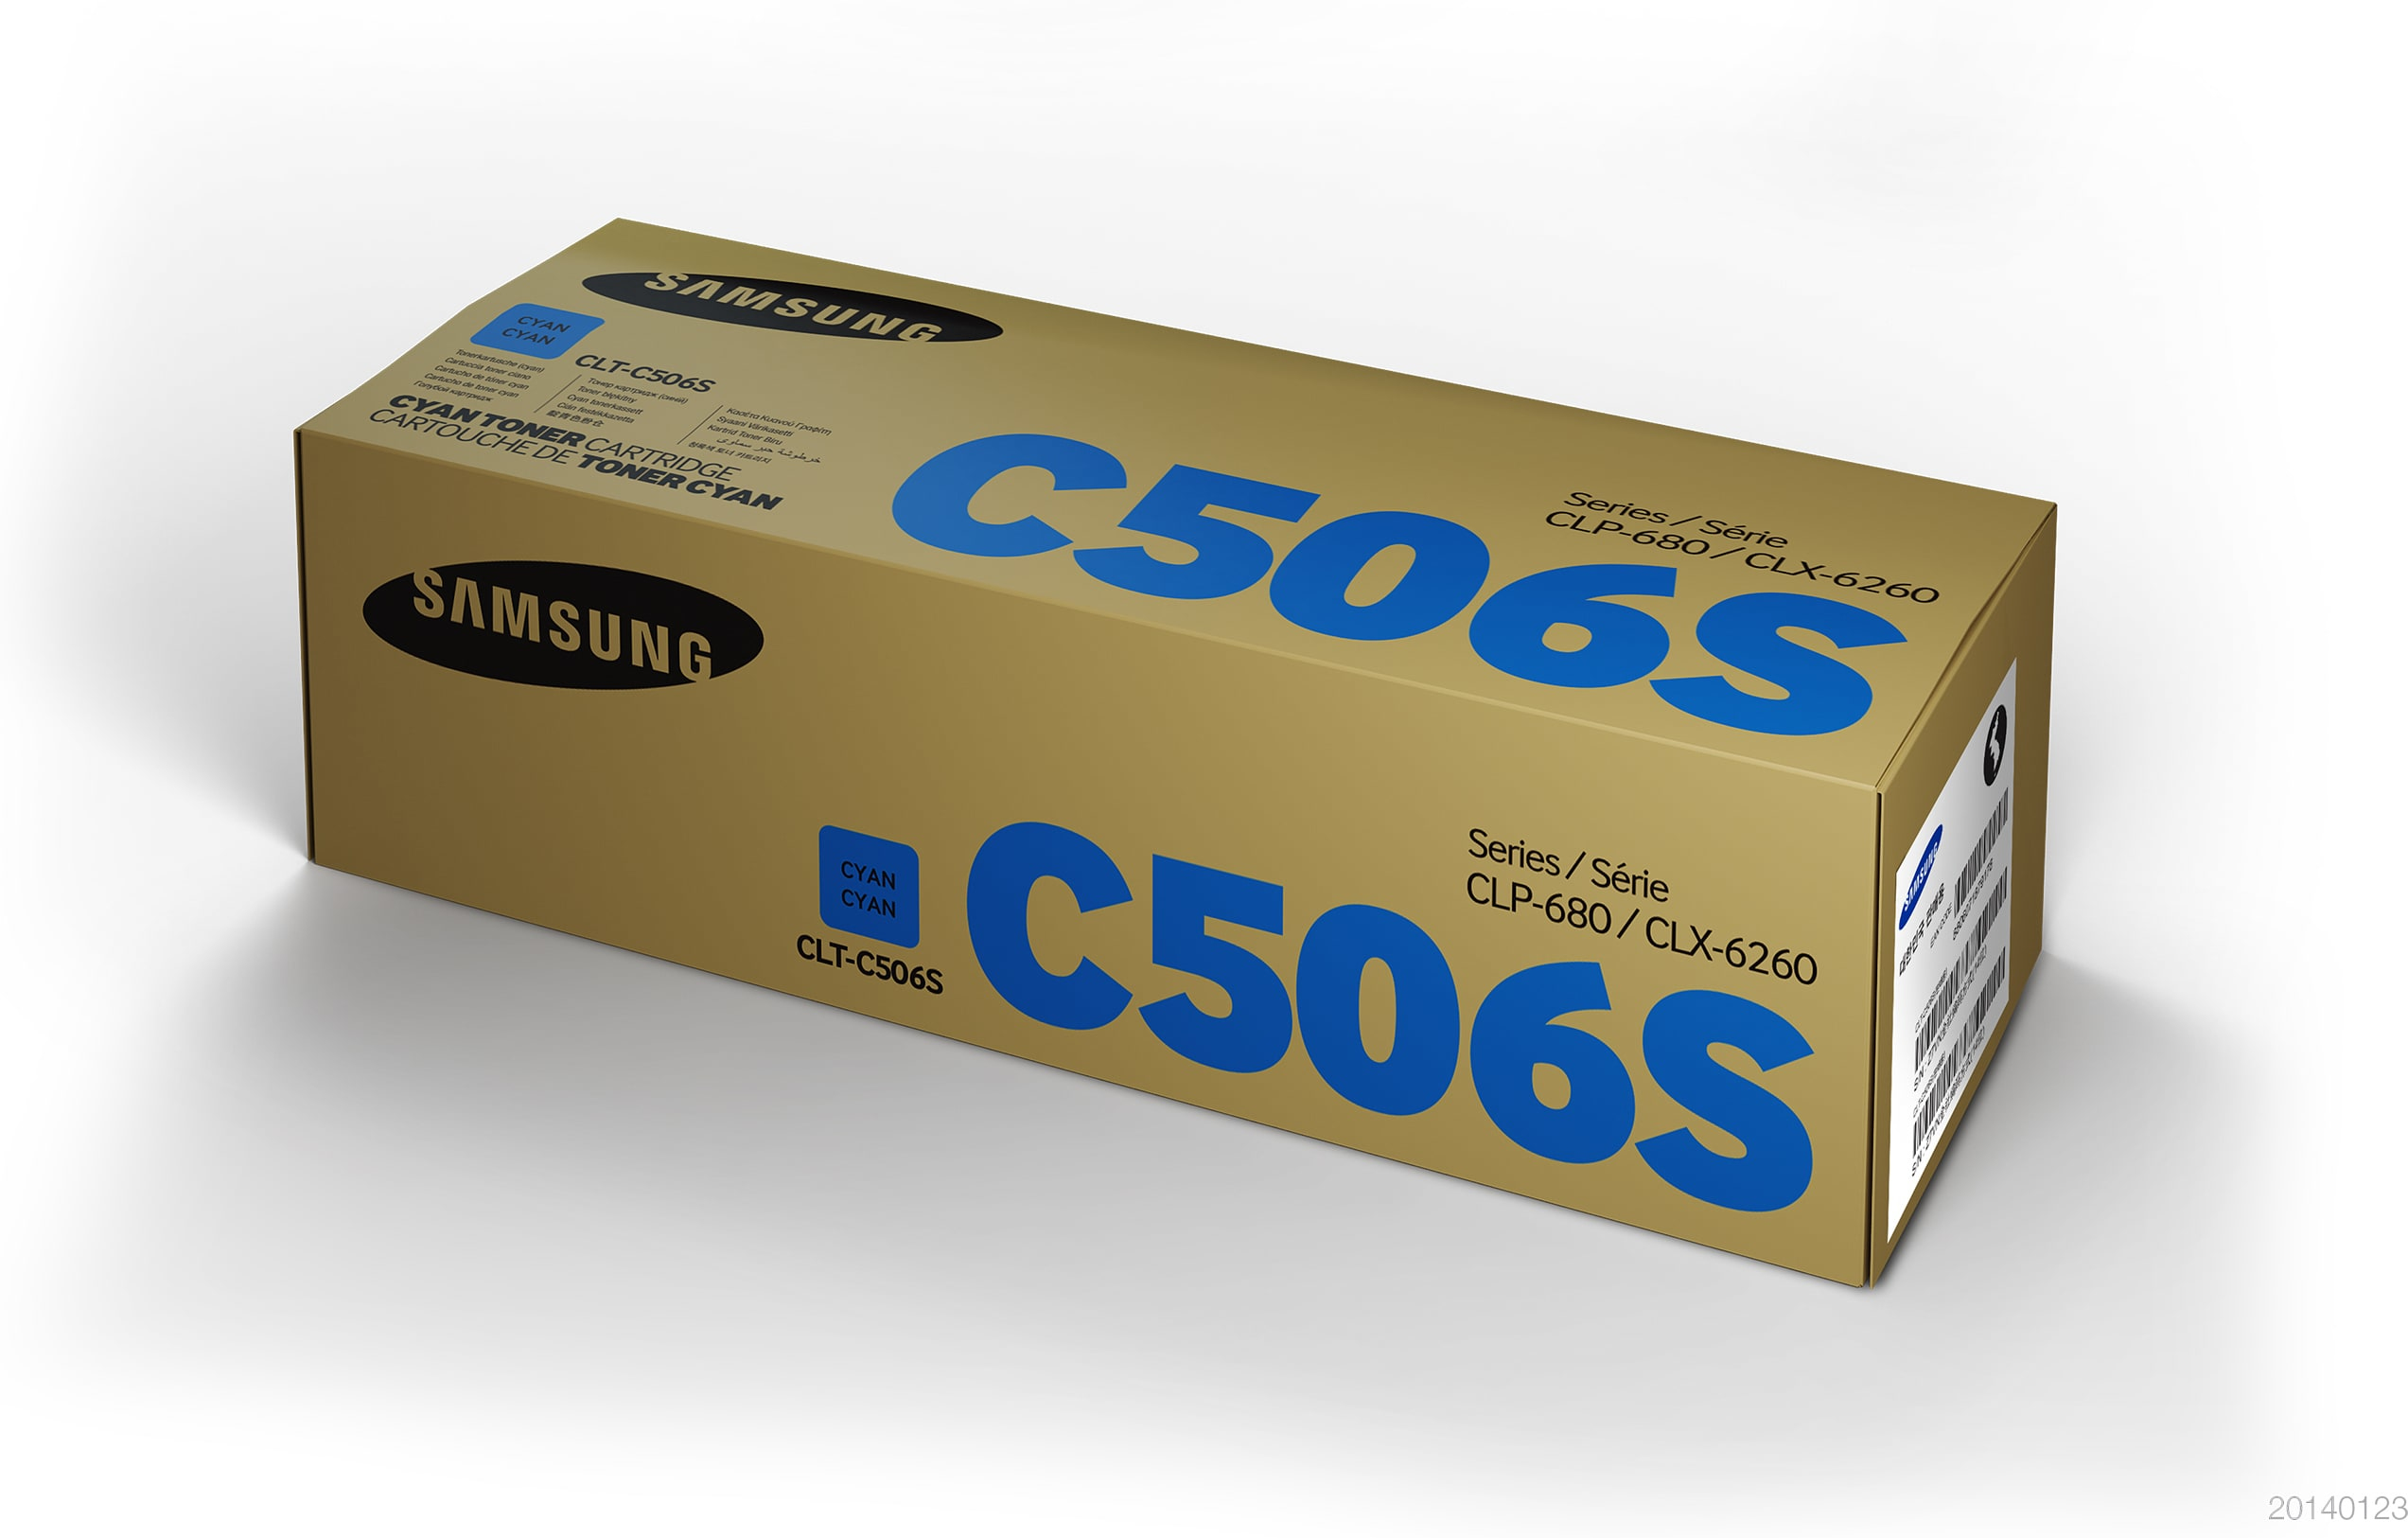 Samsung CLT-C506S